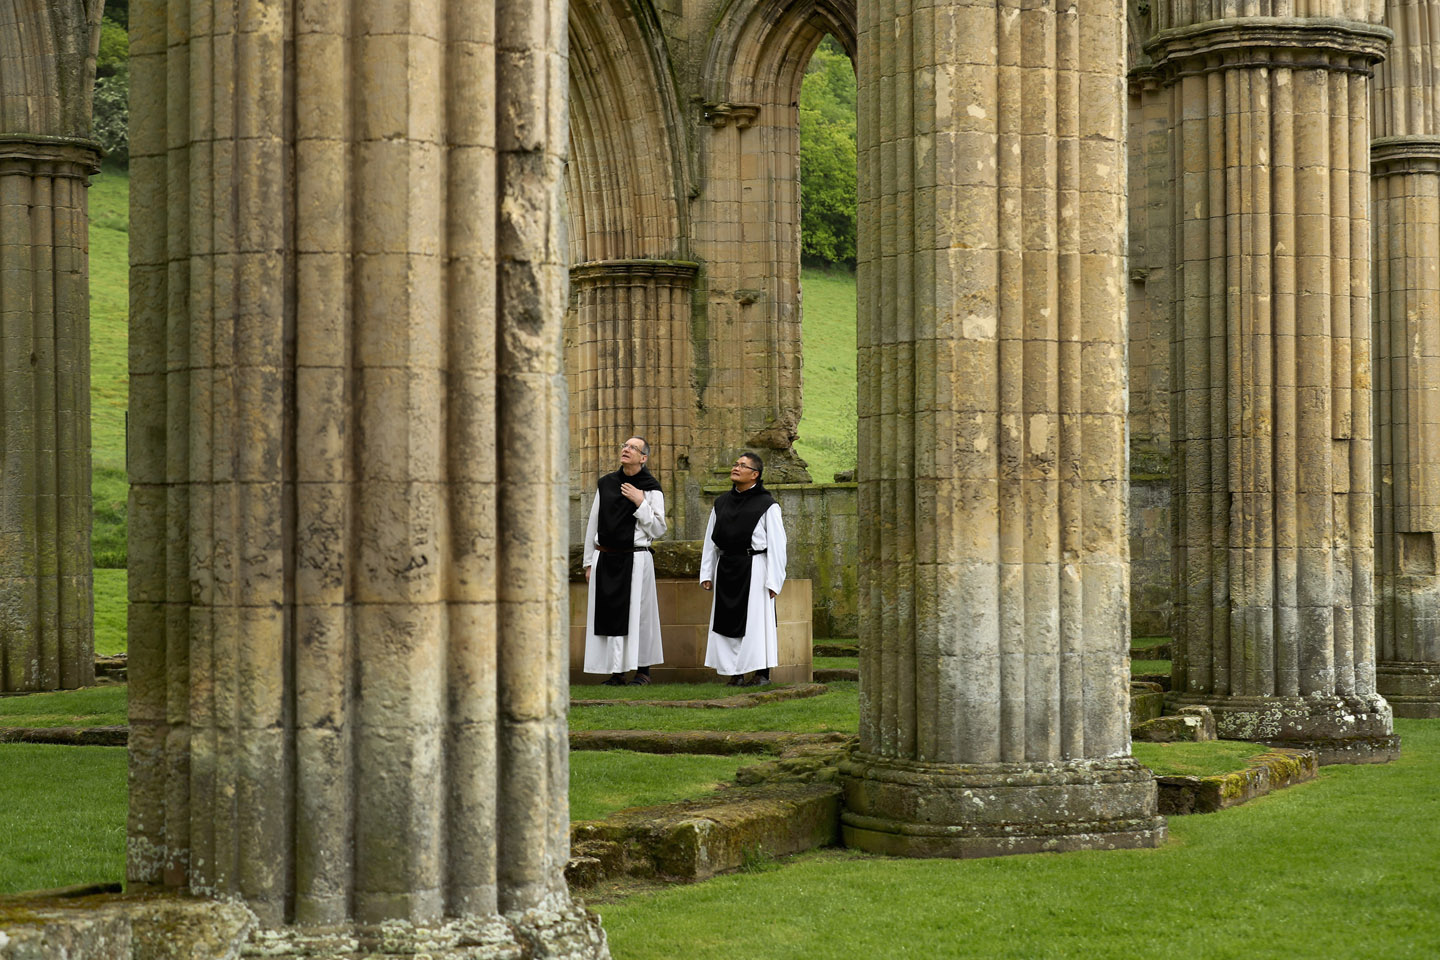 Aproximadamente 500 años después, una serie de fotografías publicadas en el DailyMail, muestra a dos monjes cistercienses, el Padre Joseph y el hermano Bernard, visitando las ruinas de una de estas grandes abadías expropiadas y destruidas.